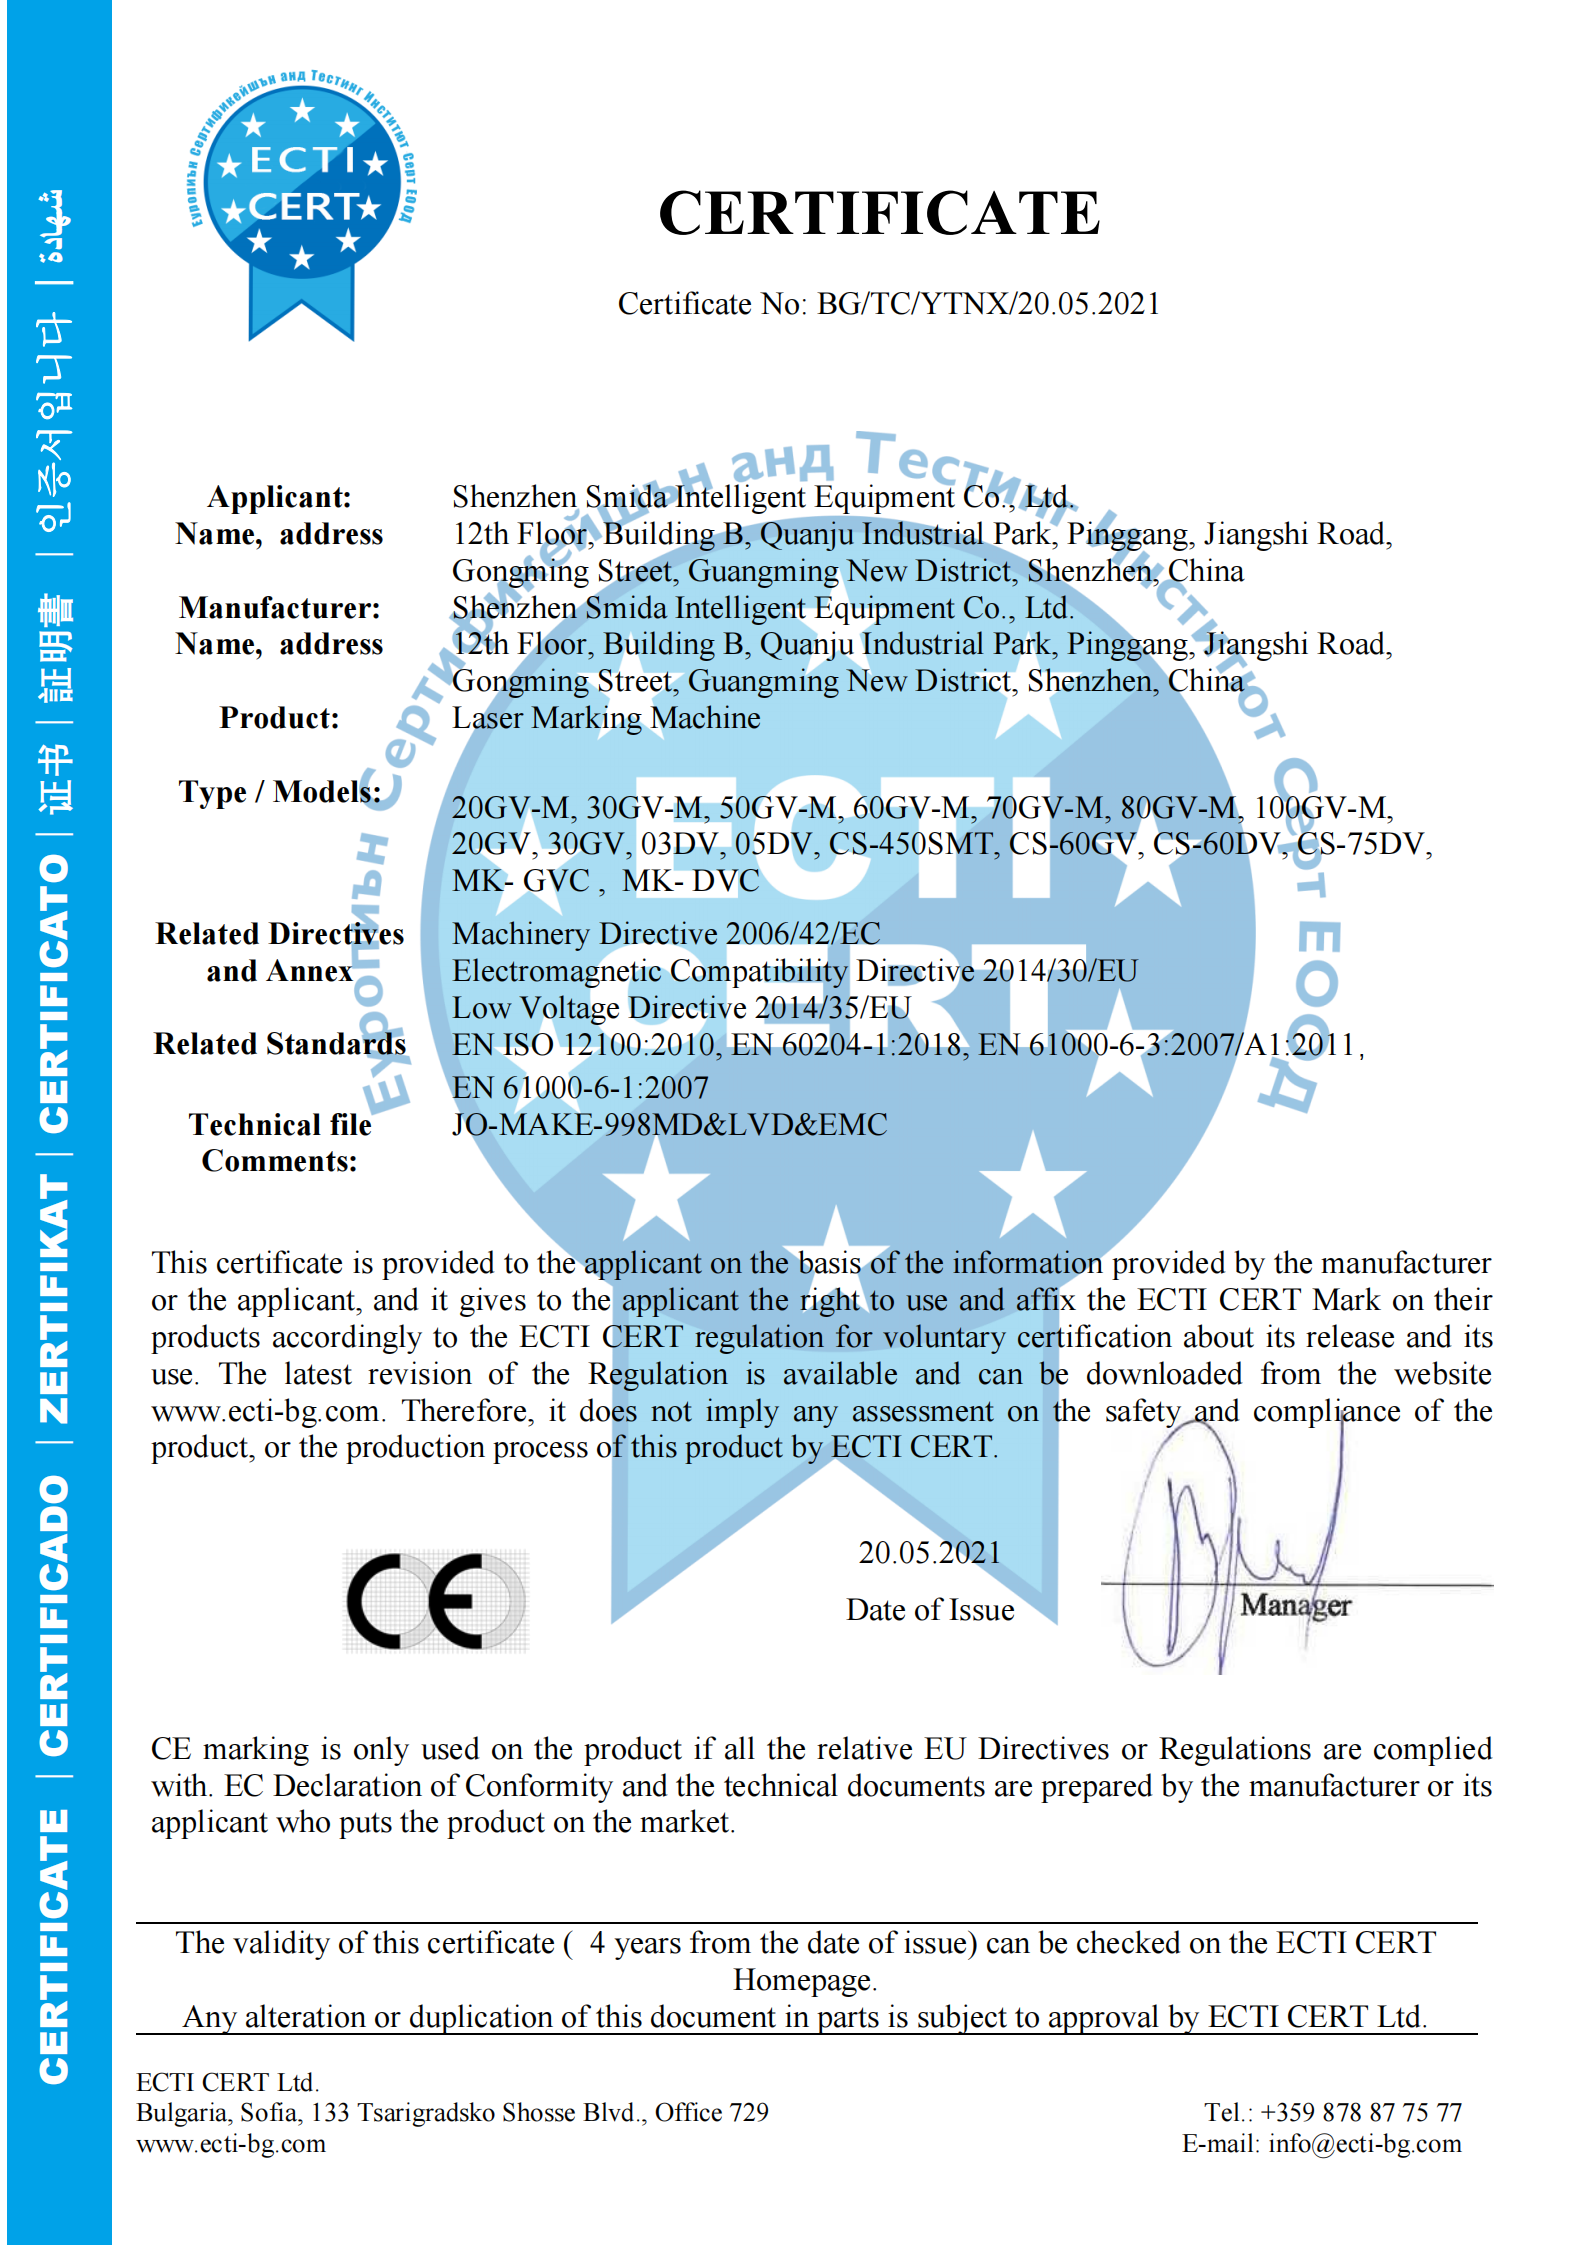 新增激光打标机CE认证